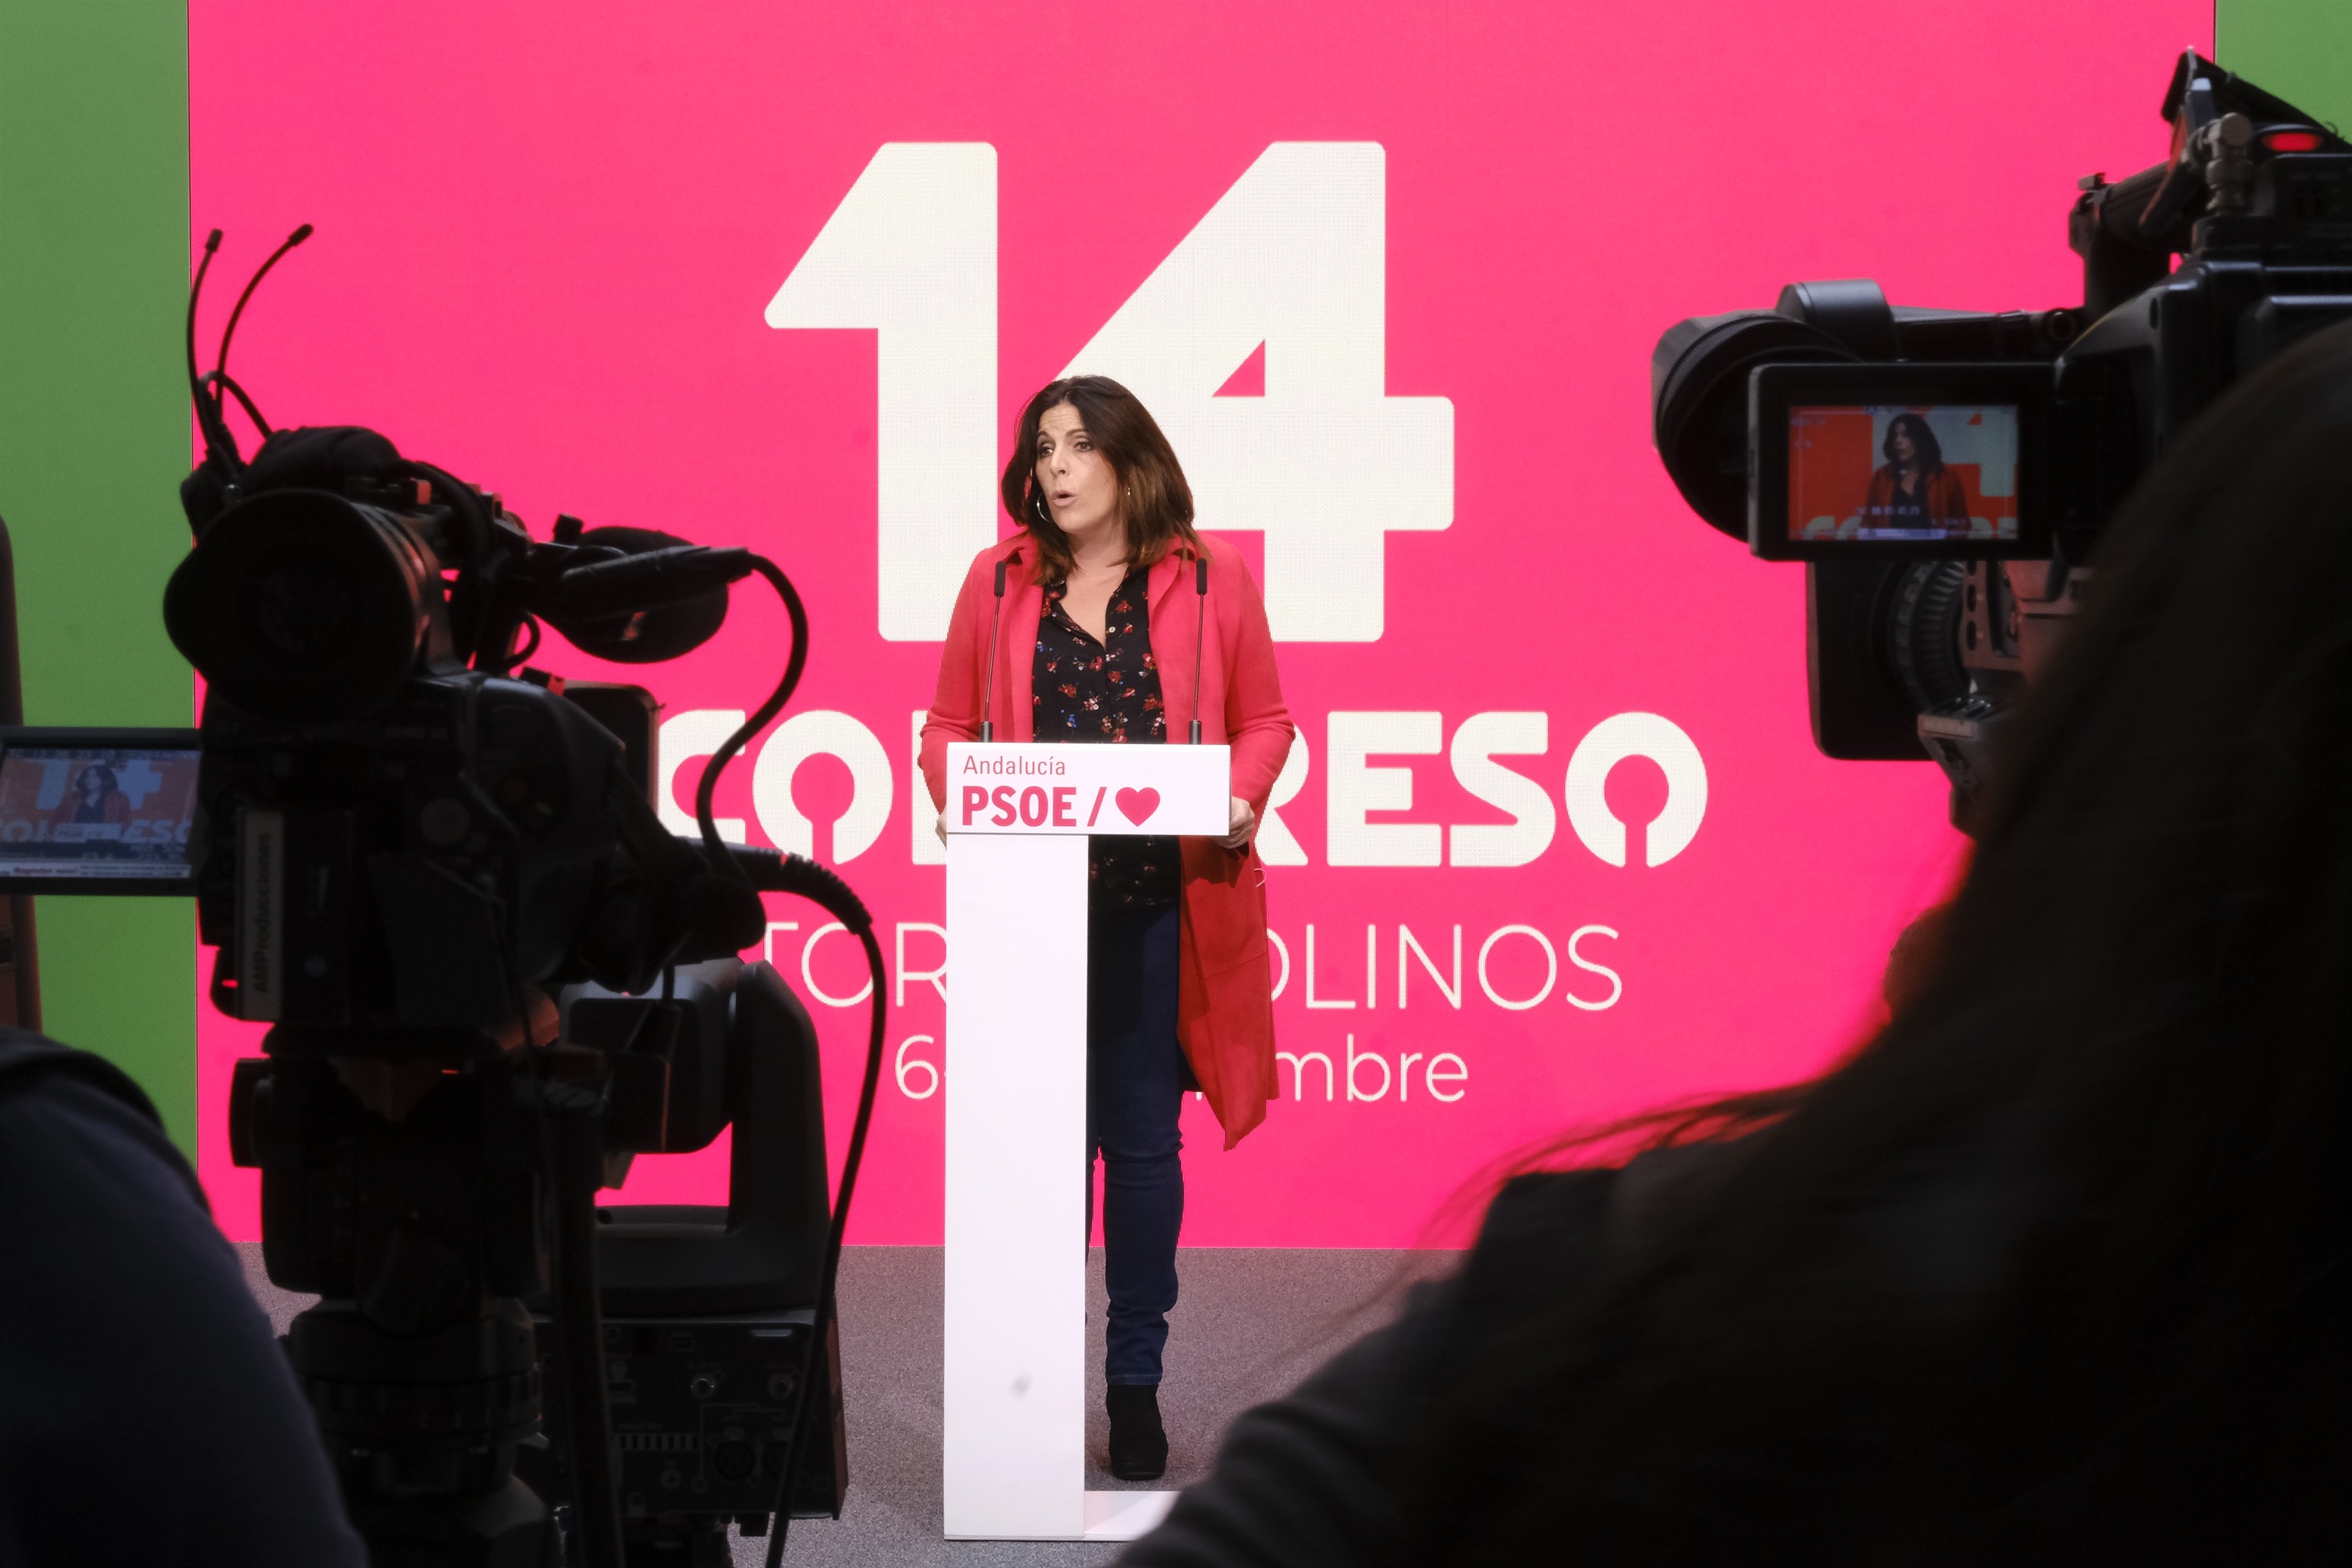 La portavoz parlamentaria del PSOE andaluz, ngeles Frriz, en la sede del partido.